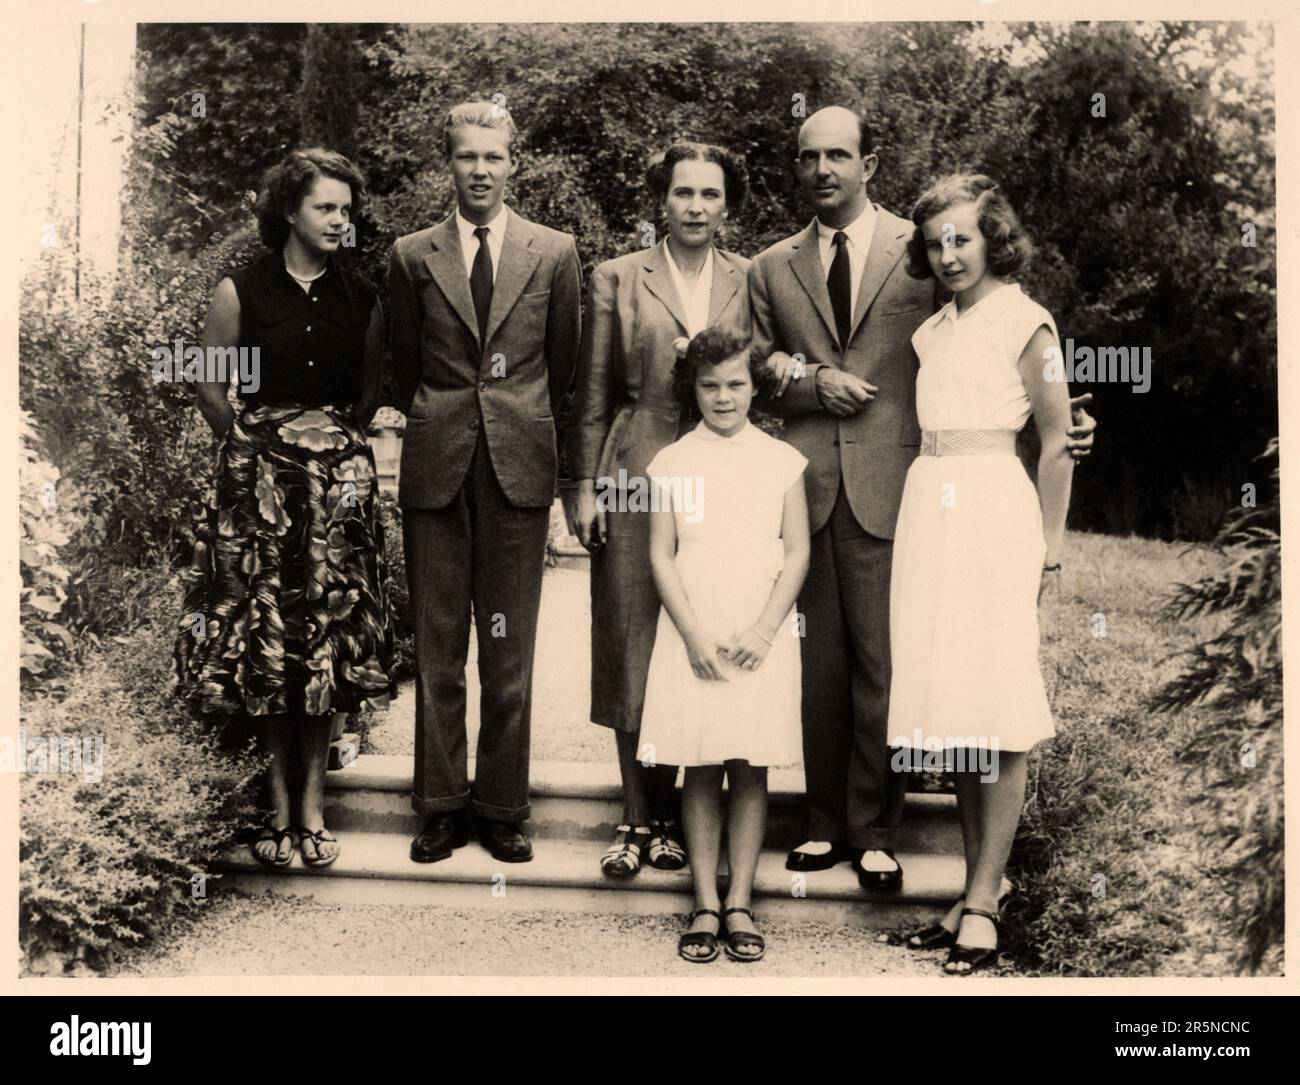 1954 CA , Cascais , PORTUGAL : le dernier Roi d'Italie UMBERTO II di SAVOIA ( 1904 - 1983 ) , le Re di Maggio en mai 1946 , lors d'une visite officielle de sa famille pendant l'exil . Dans cette photo avec sa femme ex-reine d'Italie Maria José de Belgique ( Marie , 1906 - 2001 ) et les fils : MARIA Pia ( plus tard di BORBONE PARME , né en 1934 ), VITTORIO EMANUELE Prince de Napoli ( né en 1937 ), MARIA GABRIELLA ( née en 1940 ) et MARIA BEATRICE ( née en 1943 ). Photographe inconnu . - PORTOGALLO - ITALIA - CASA SAVOIA - REALI - SAVOY - NOBLESSE - ROYALTIES - HISTOIRE - FOTO STORICHE - ROYALTIES - NOBILI - N Banque D'Images